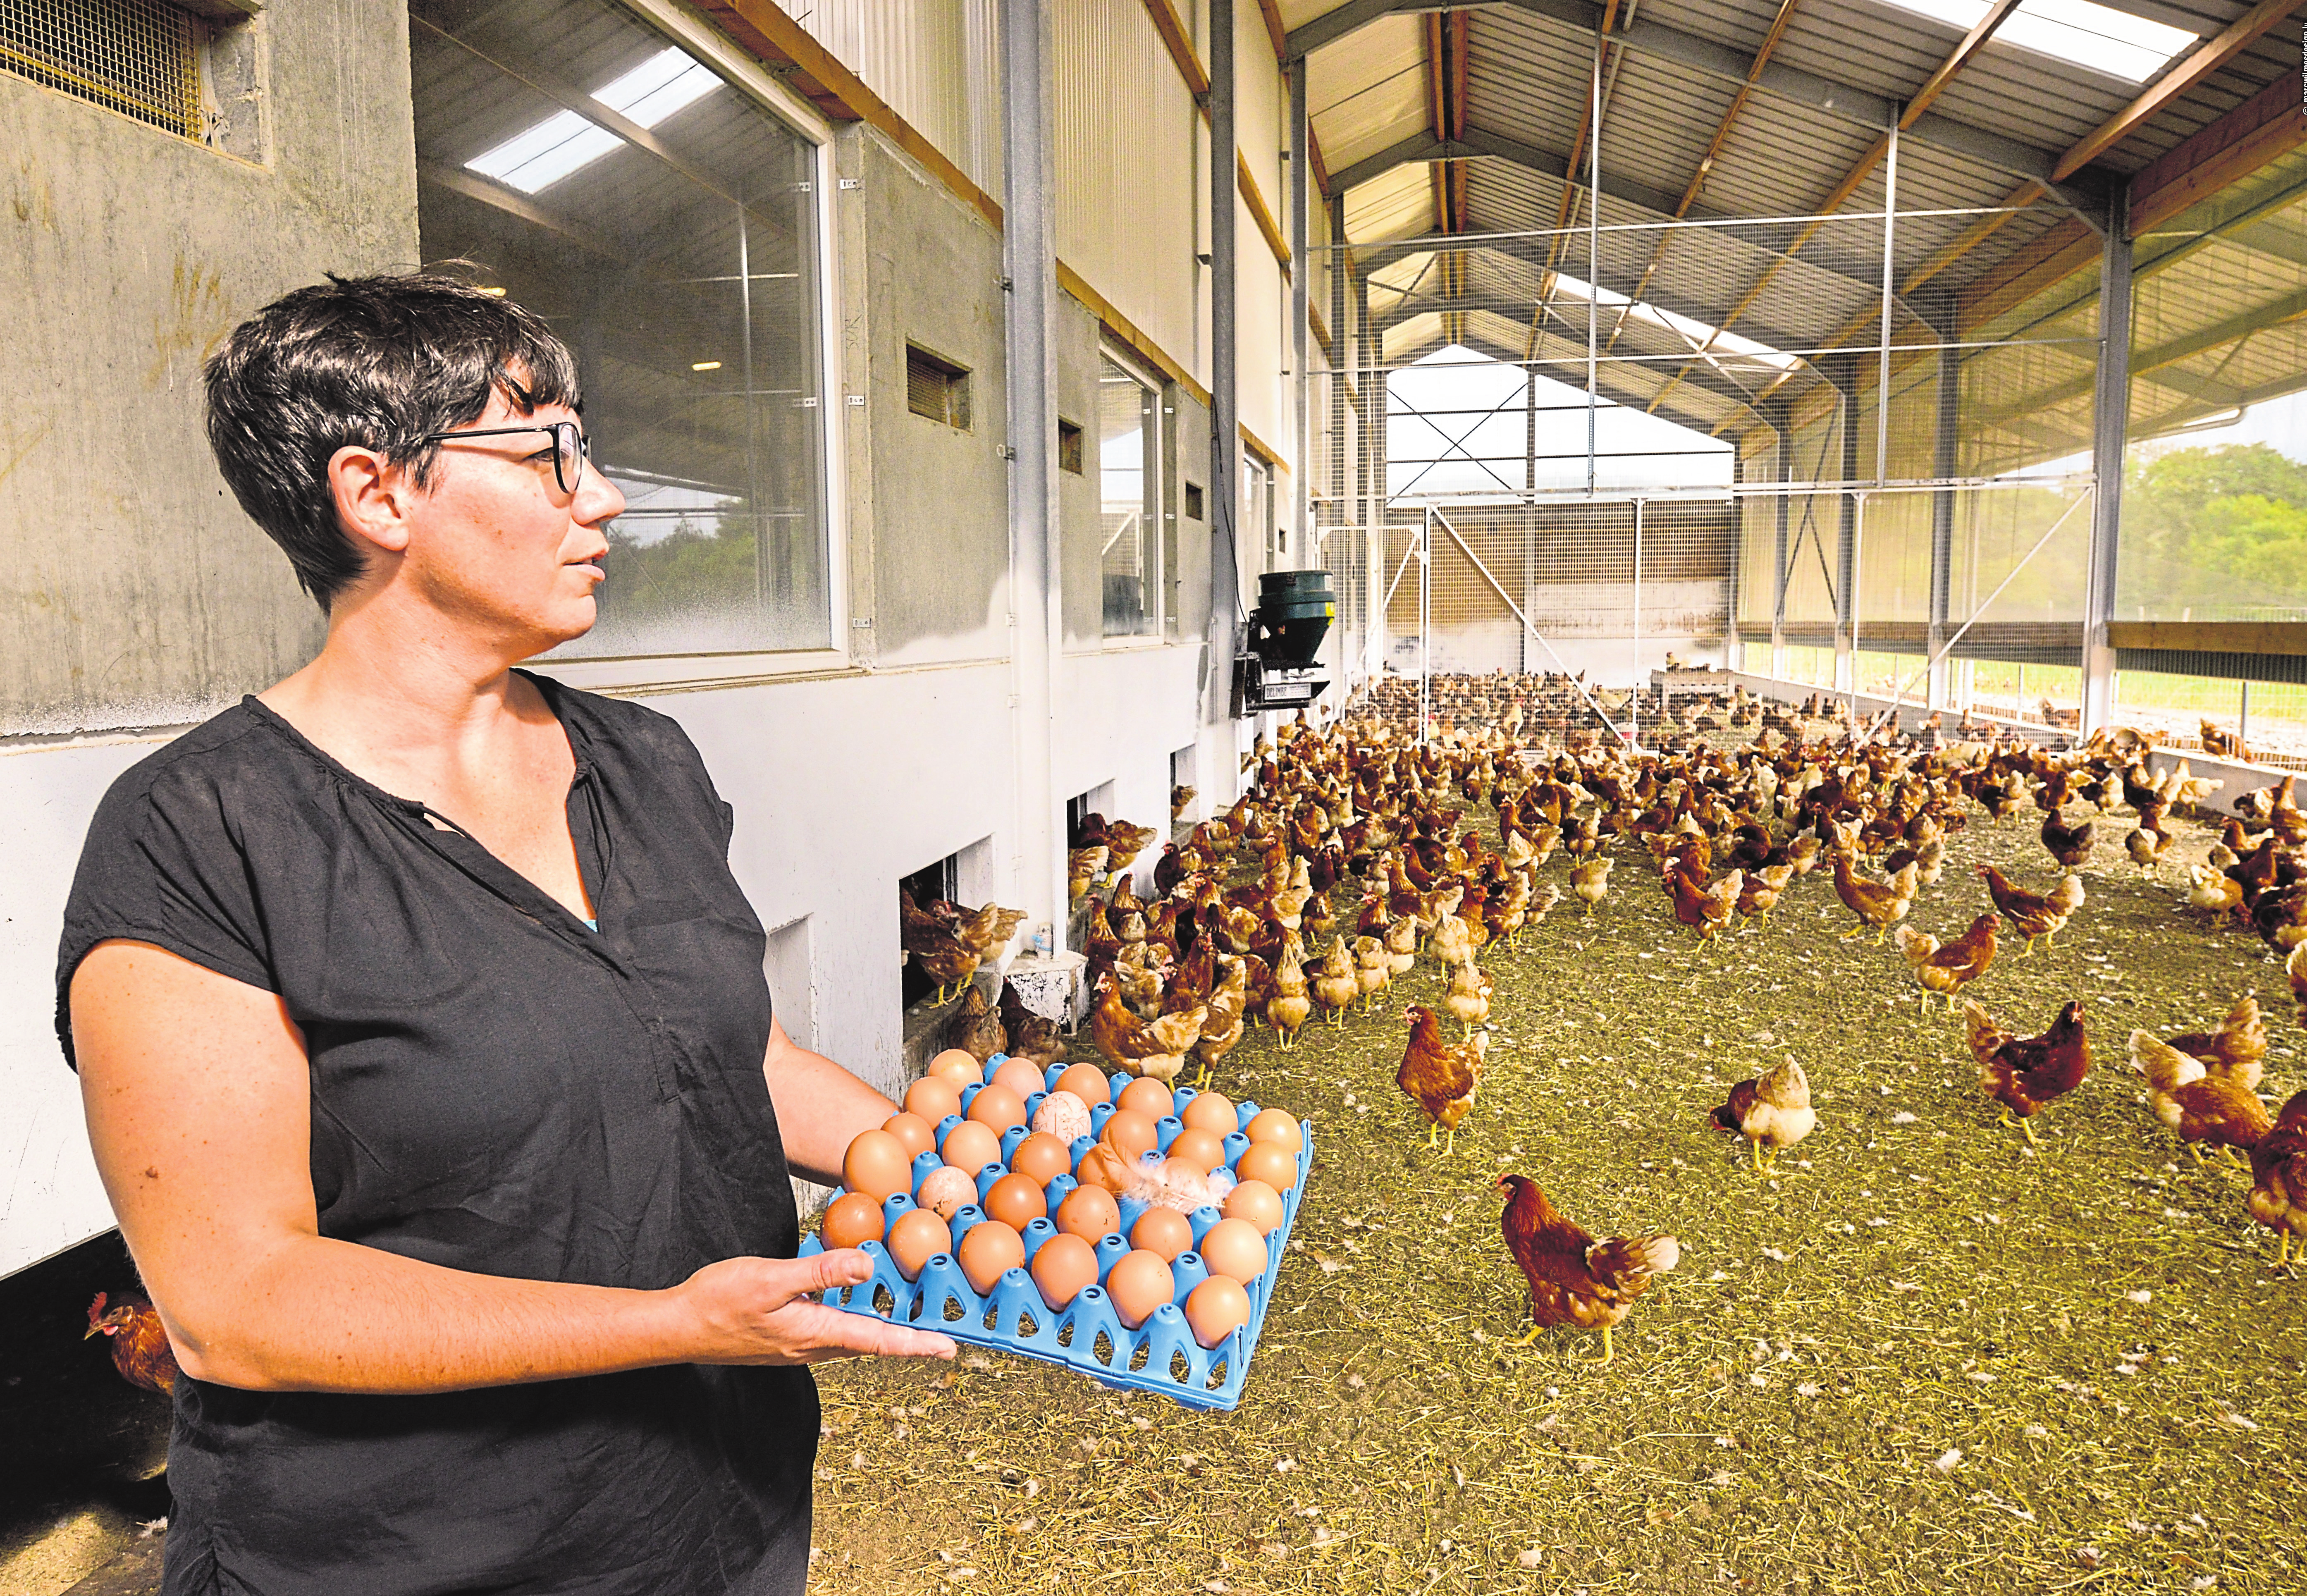 Laut EU-Norm sind sechs Tiere pro Quadratmeter für einen Biobetrieb zugelassen, aber Bio-Ovo beschränkt die Haltung auf 4,5 Hühner pro Quadratmeter. Fotos: Marc Wilmes Design